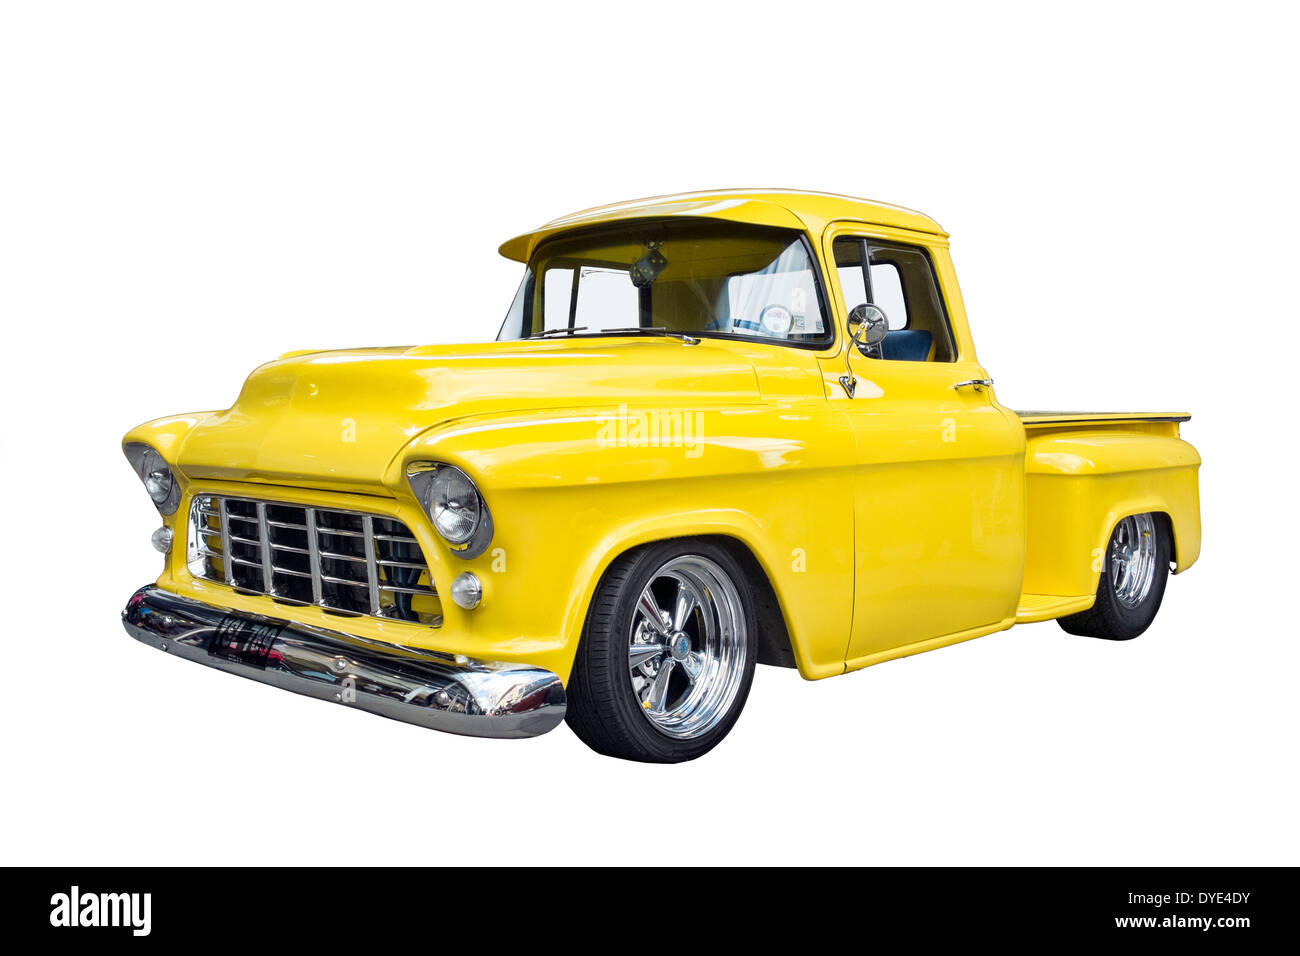 Un corte retro amarillo Americana Chevrolet pick-up personalizado Foto de stock